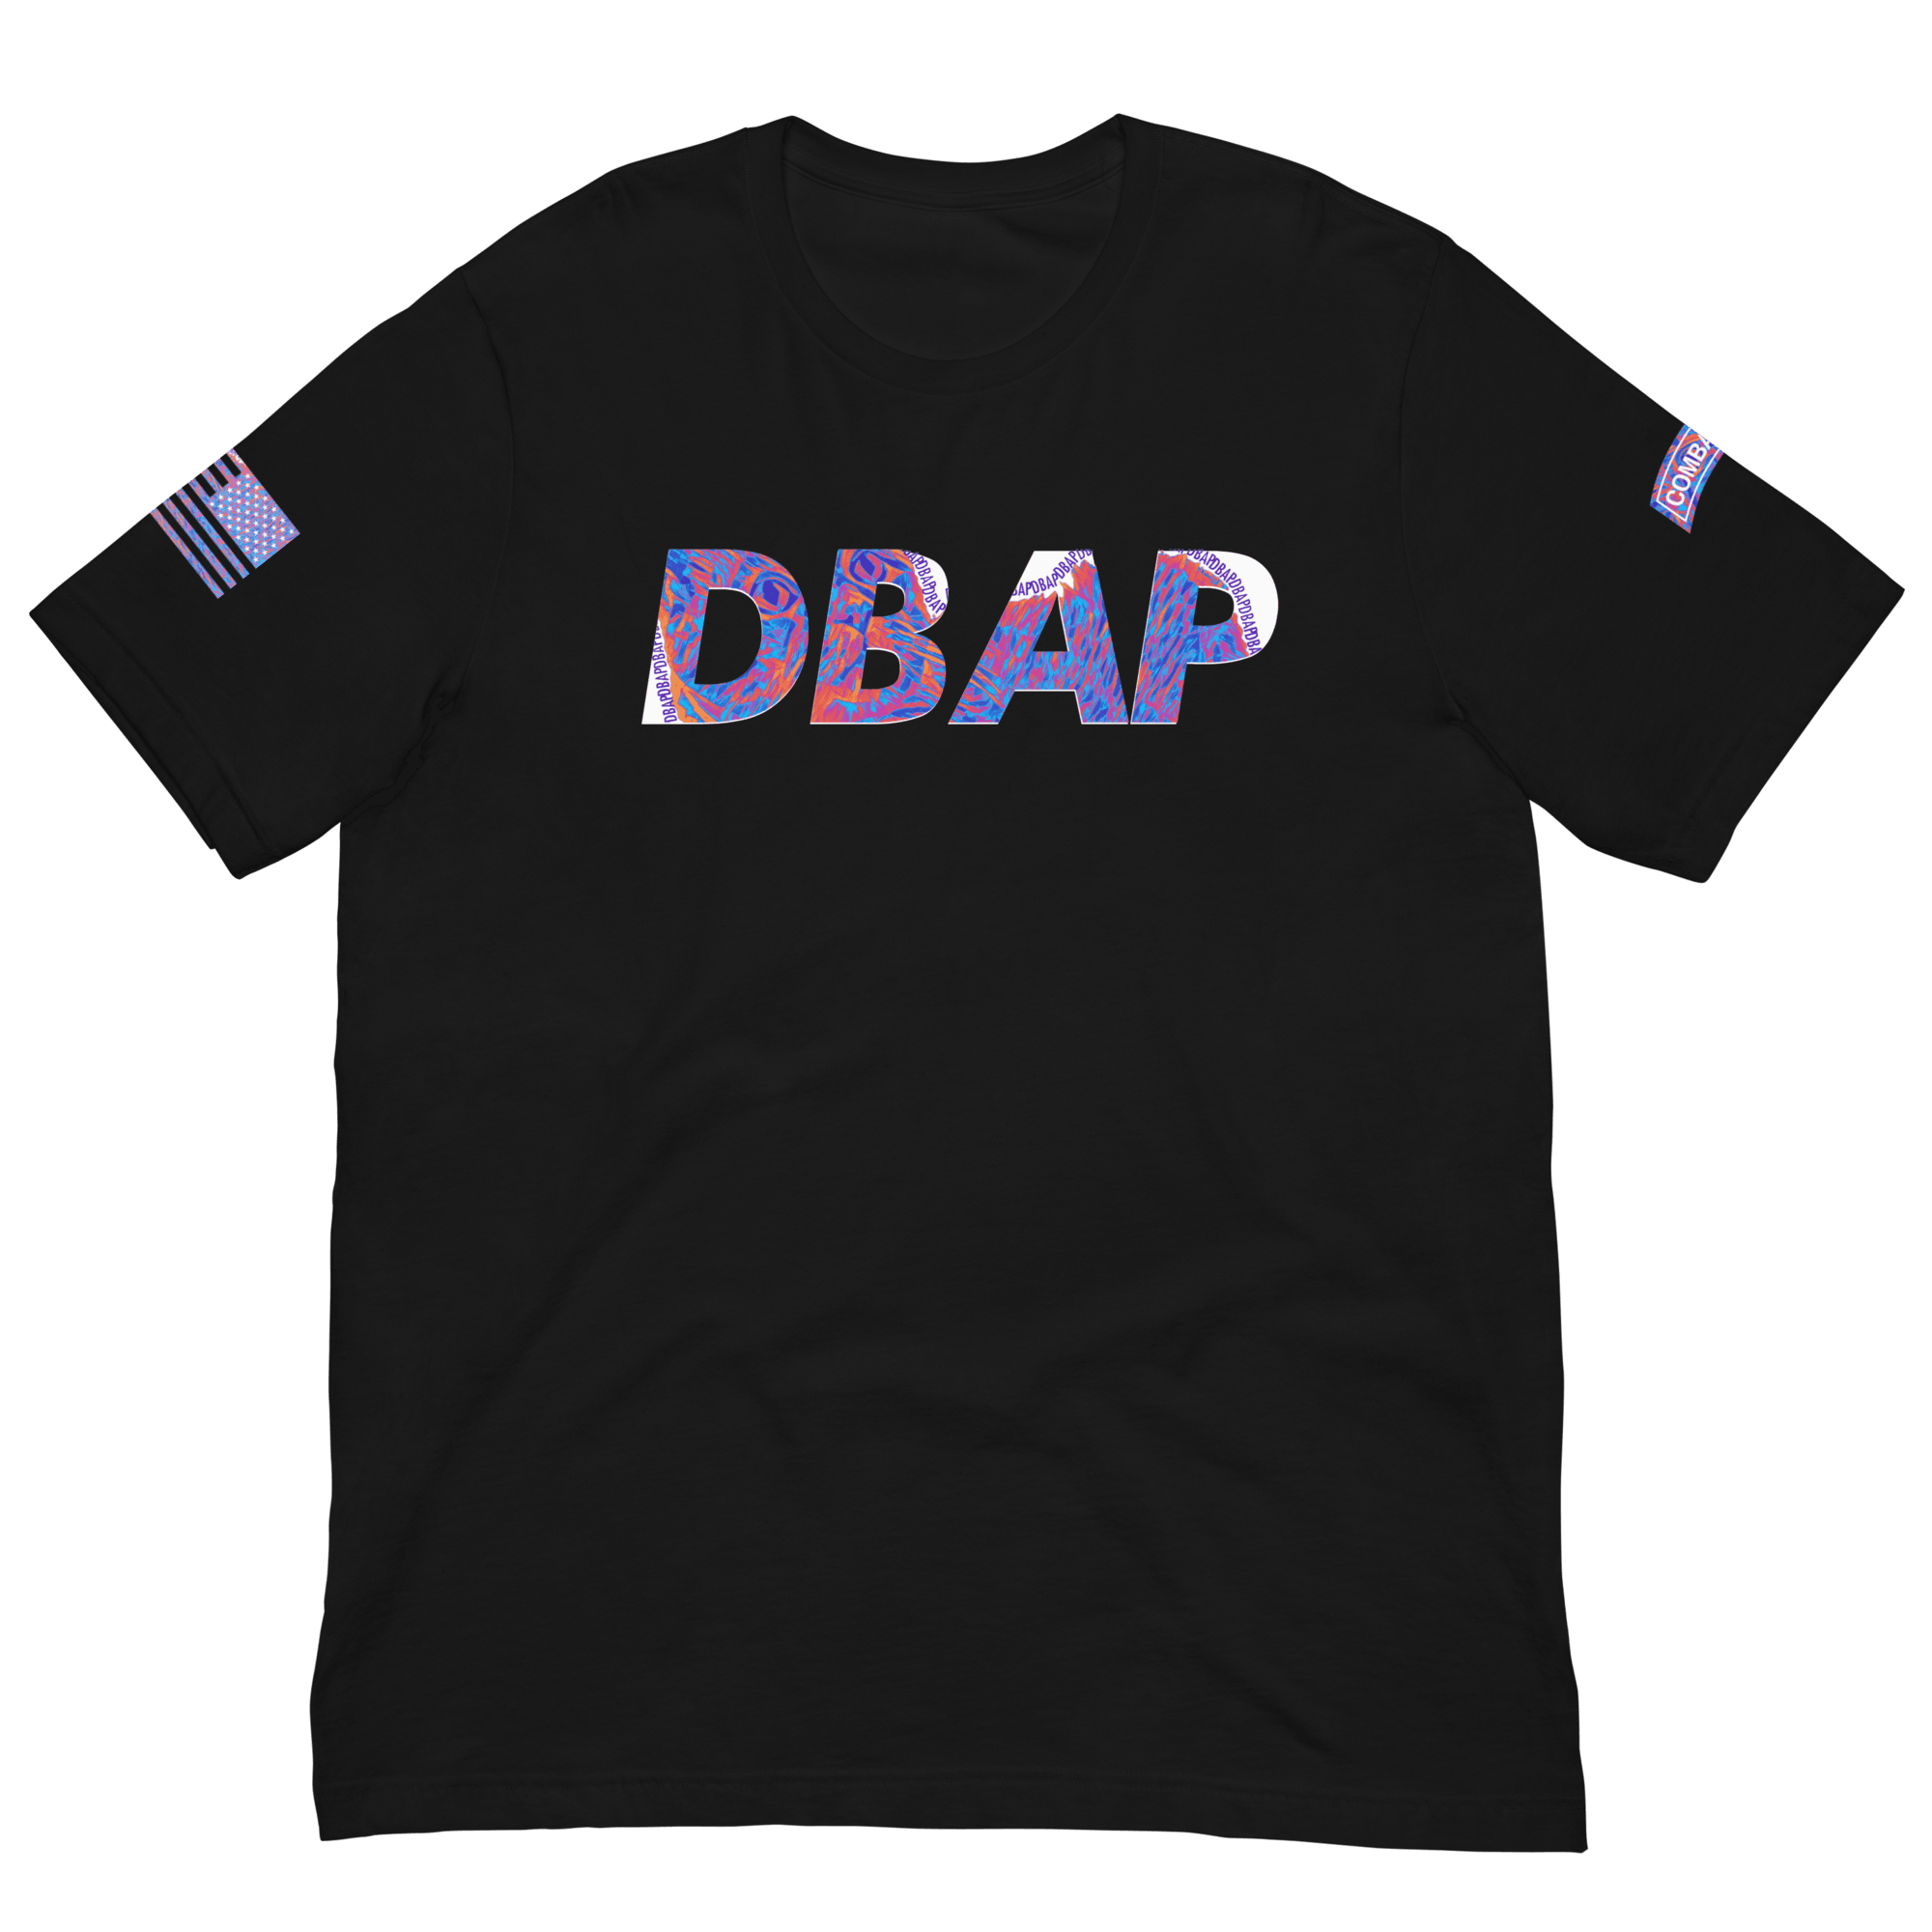 Human Made Takes Aim at BAPE in New T-Shirt Drop